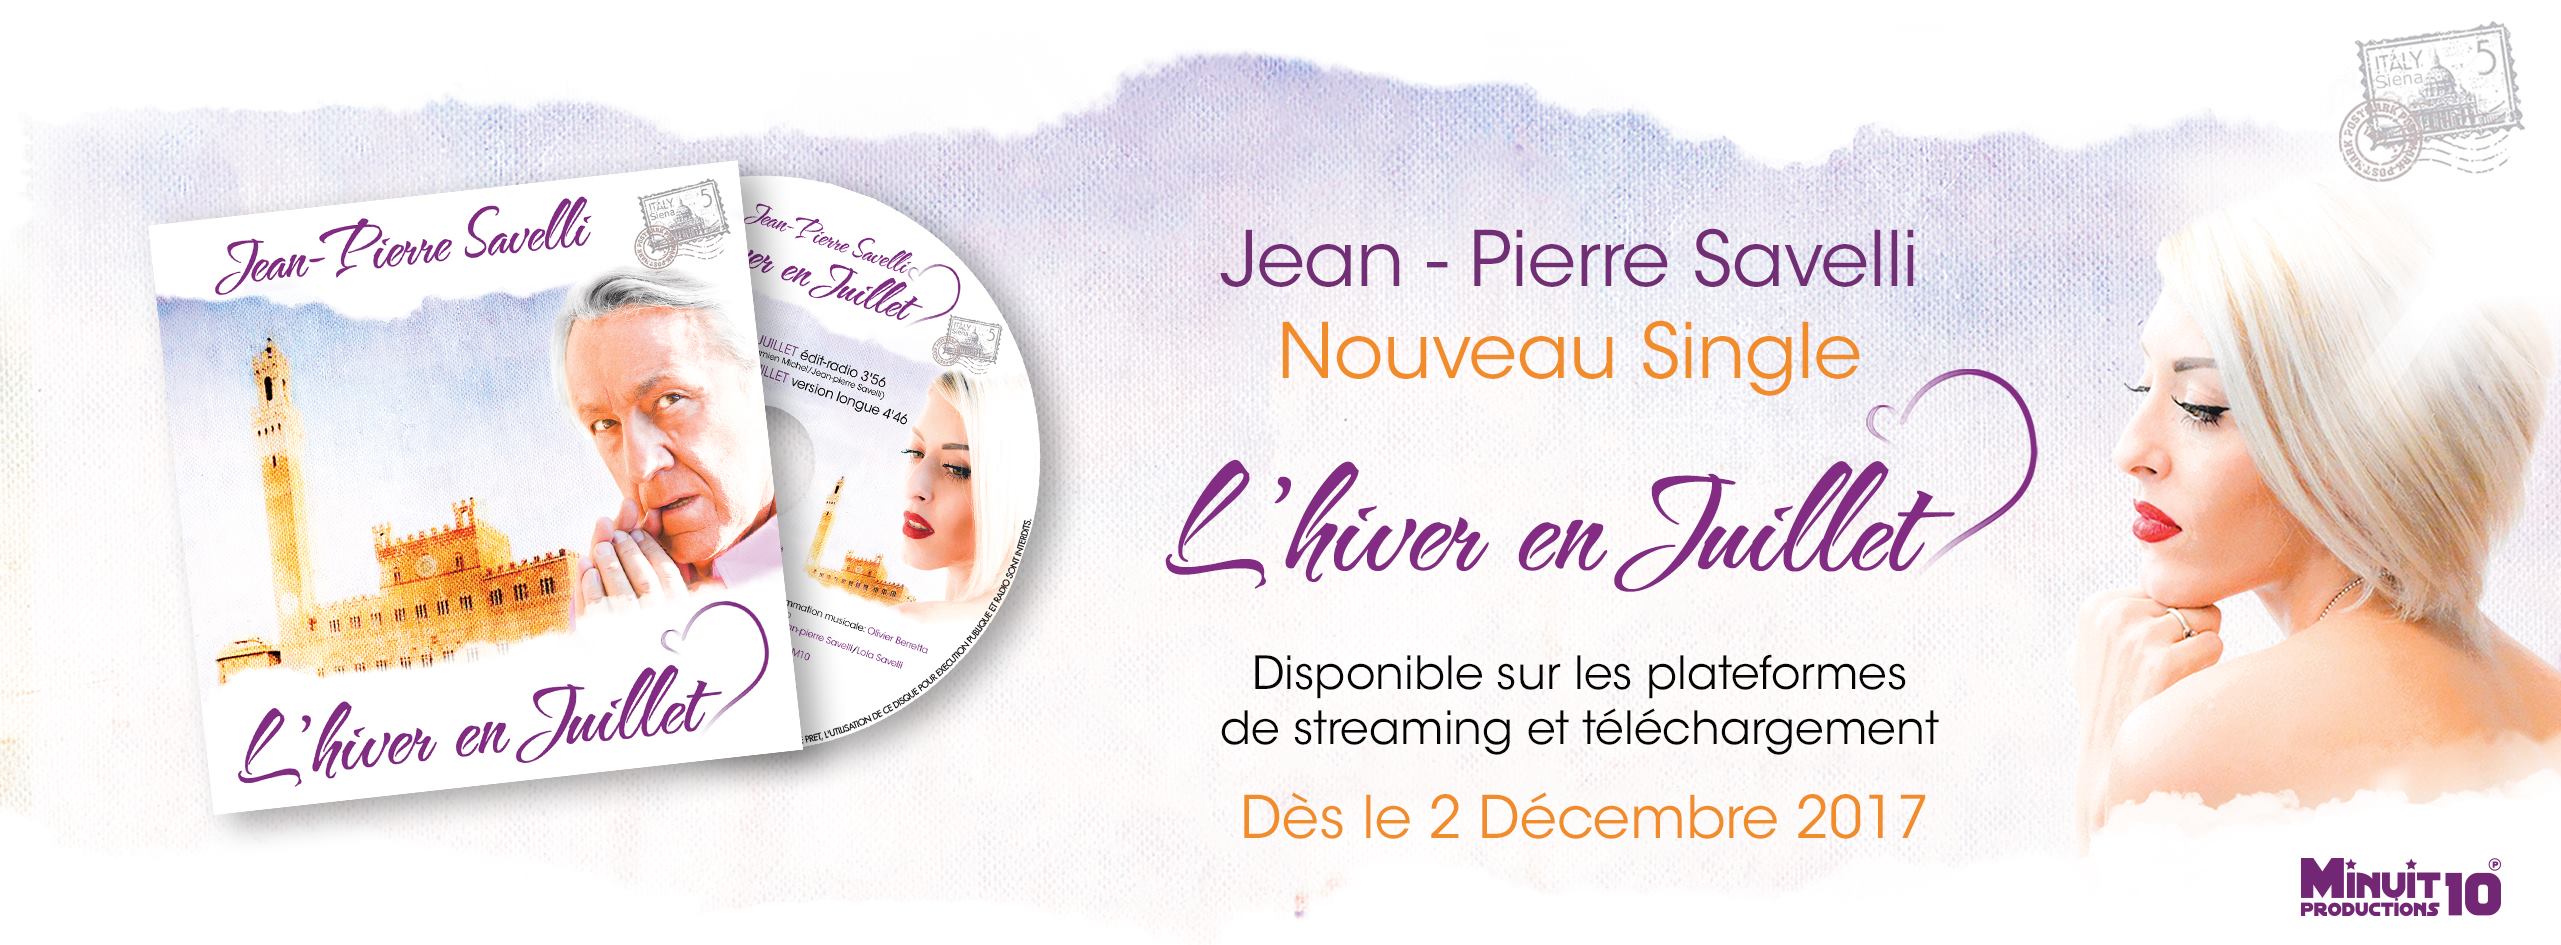 Jean-Pierre SAVELLI dévoile le single "L'hiver en juillet"